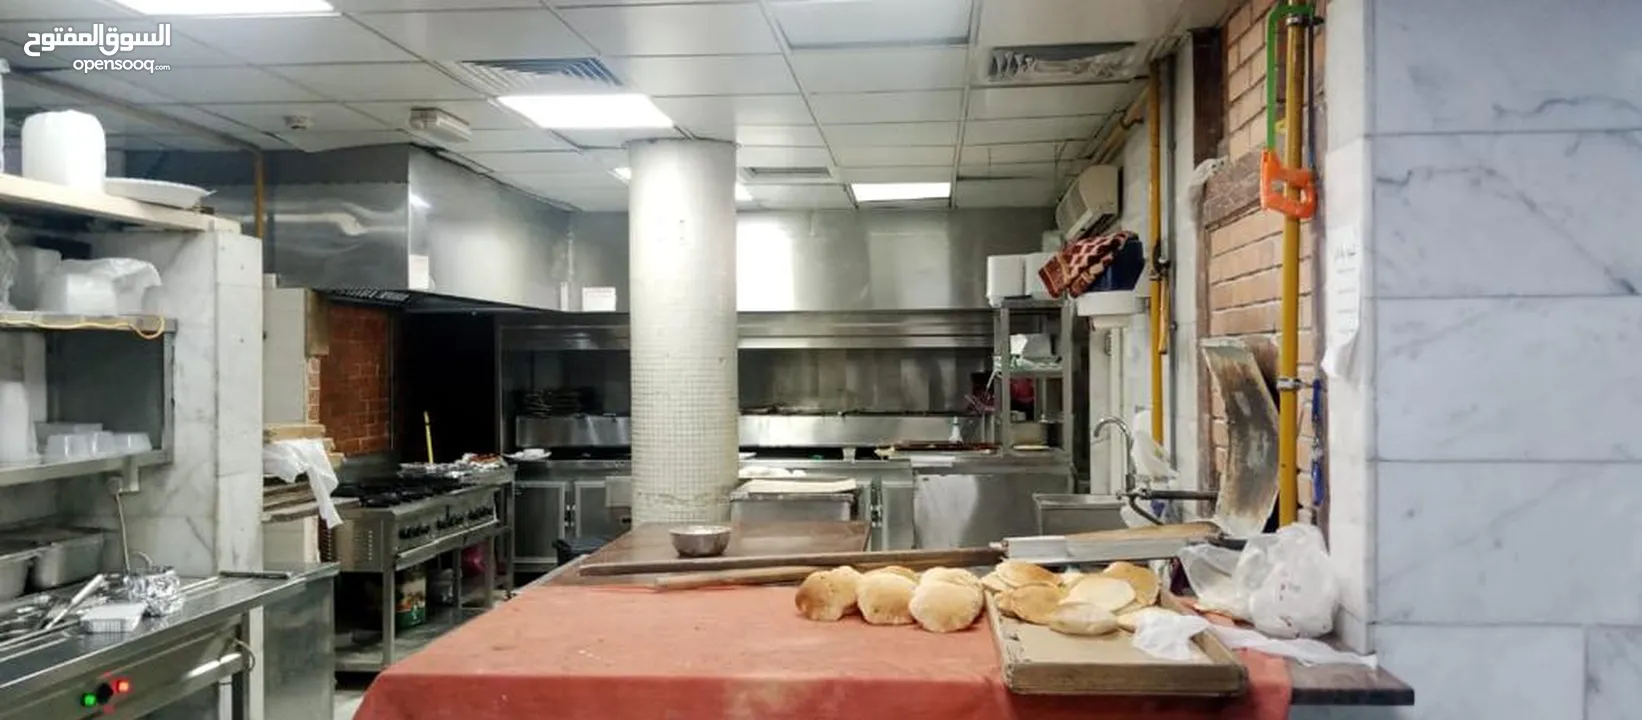 مطعم شهير ومربح مع مخبز داخلي في الكرامة للبيع  Popular And Profitable Restaurant For Sale Al KARAMA